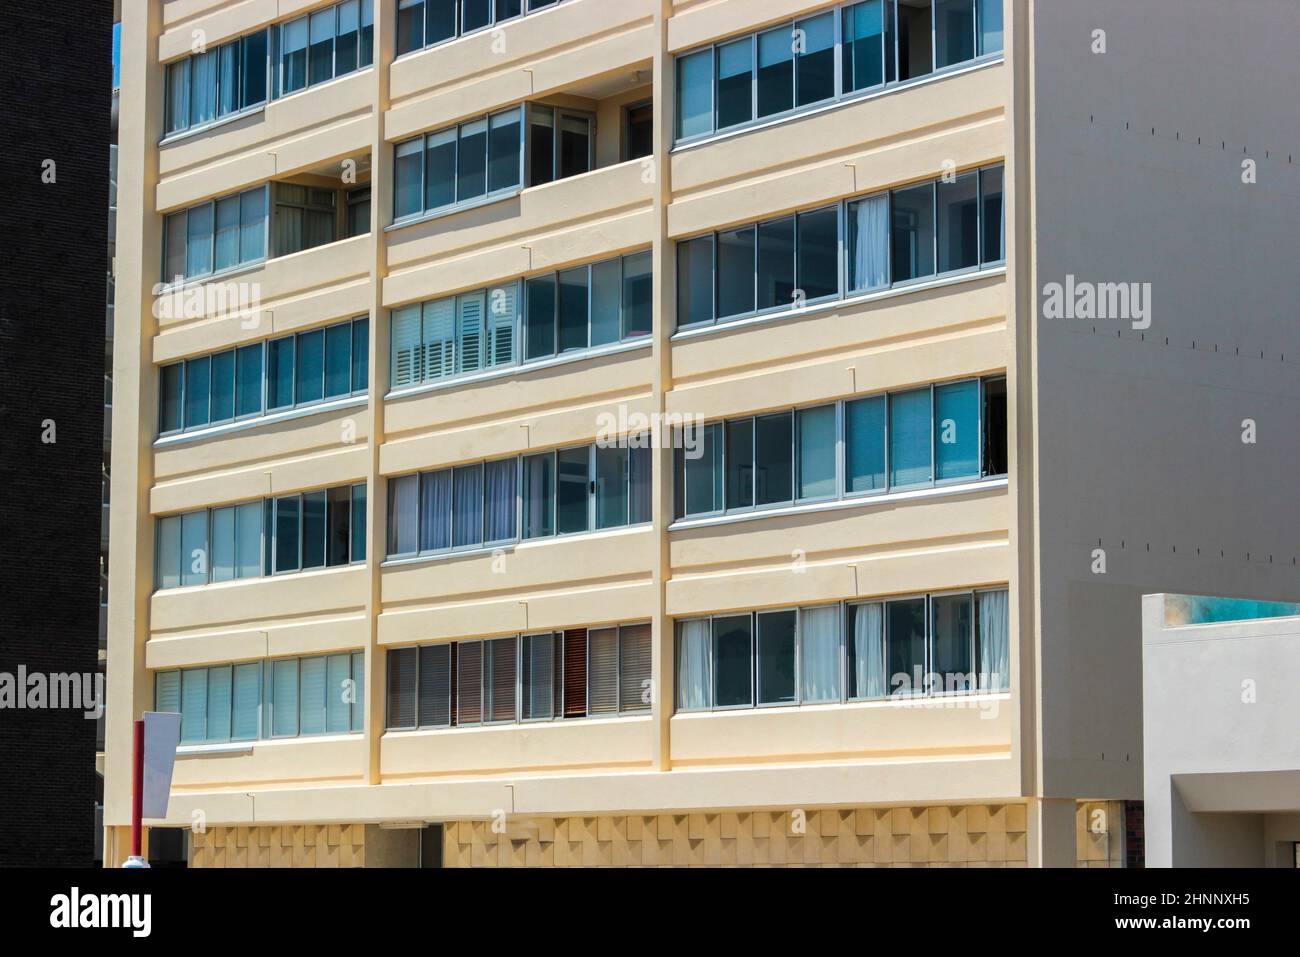 Chambres et fenêtres de l'hôtel au Cap. Texture et détail. Banque D'Images